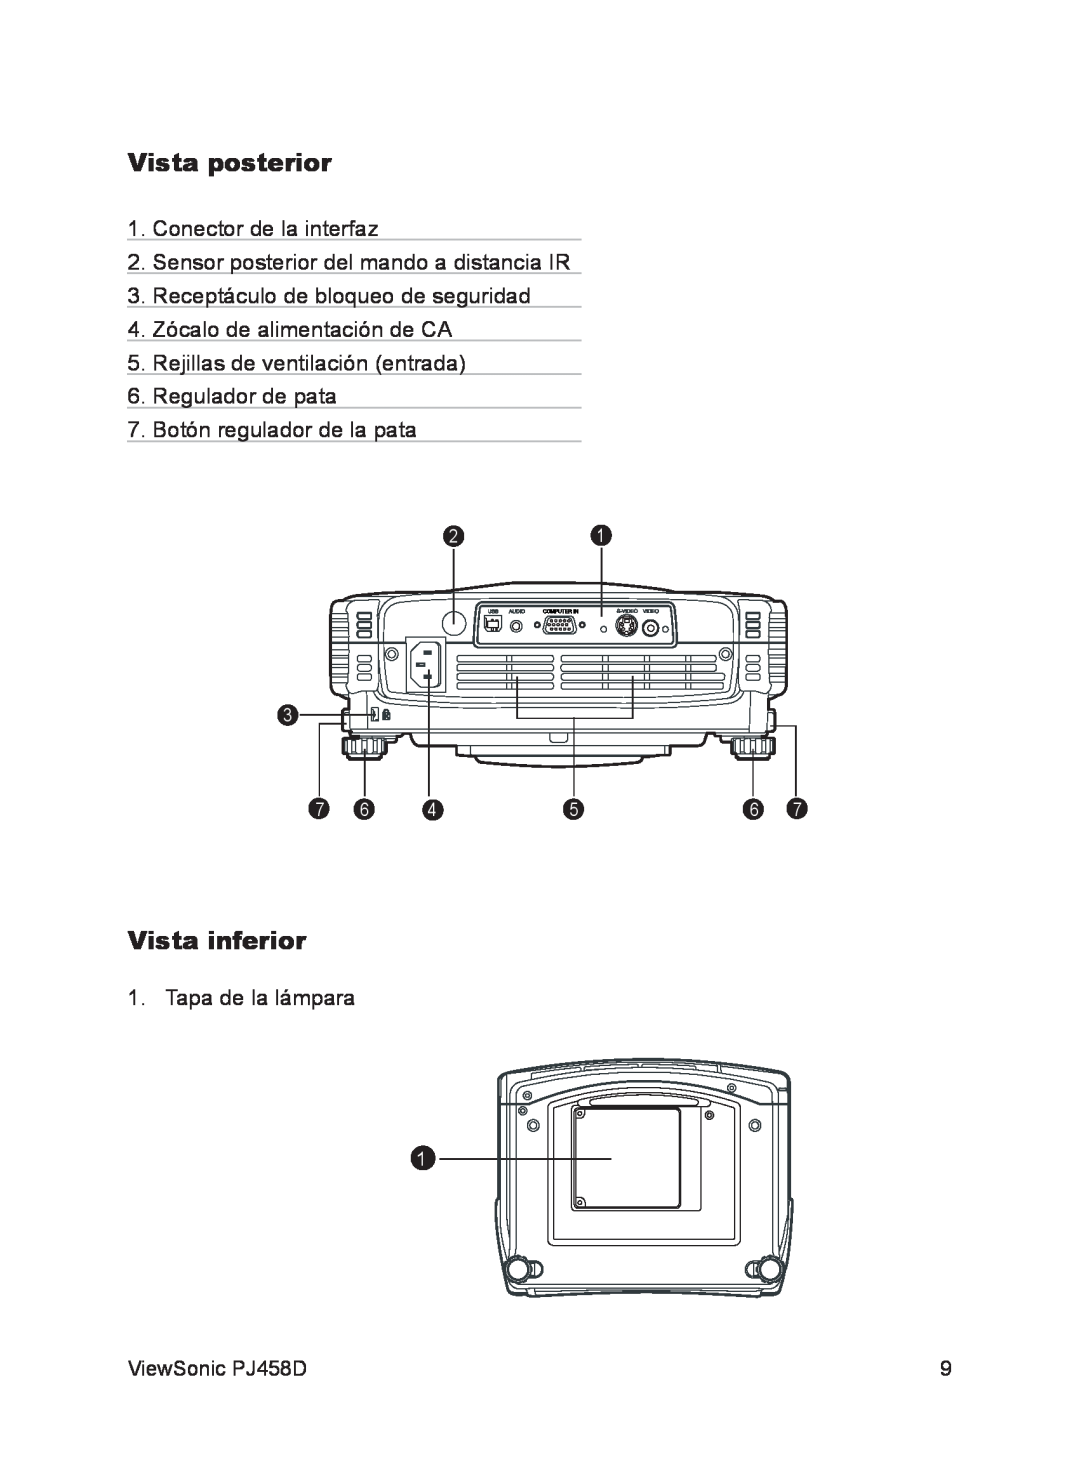 ViewSonic VS10872 Vista posterior, Vista inferior, Conector de la interfaz, Sensor posterior del mando a distancia IR 